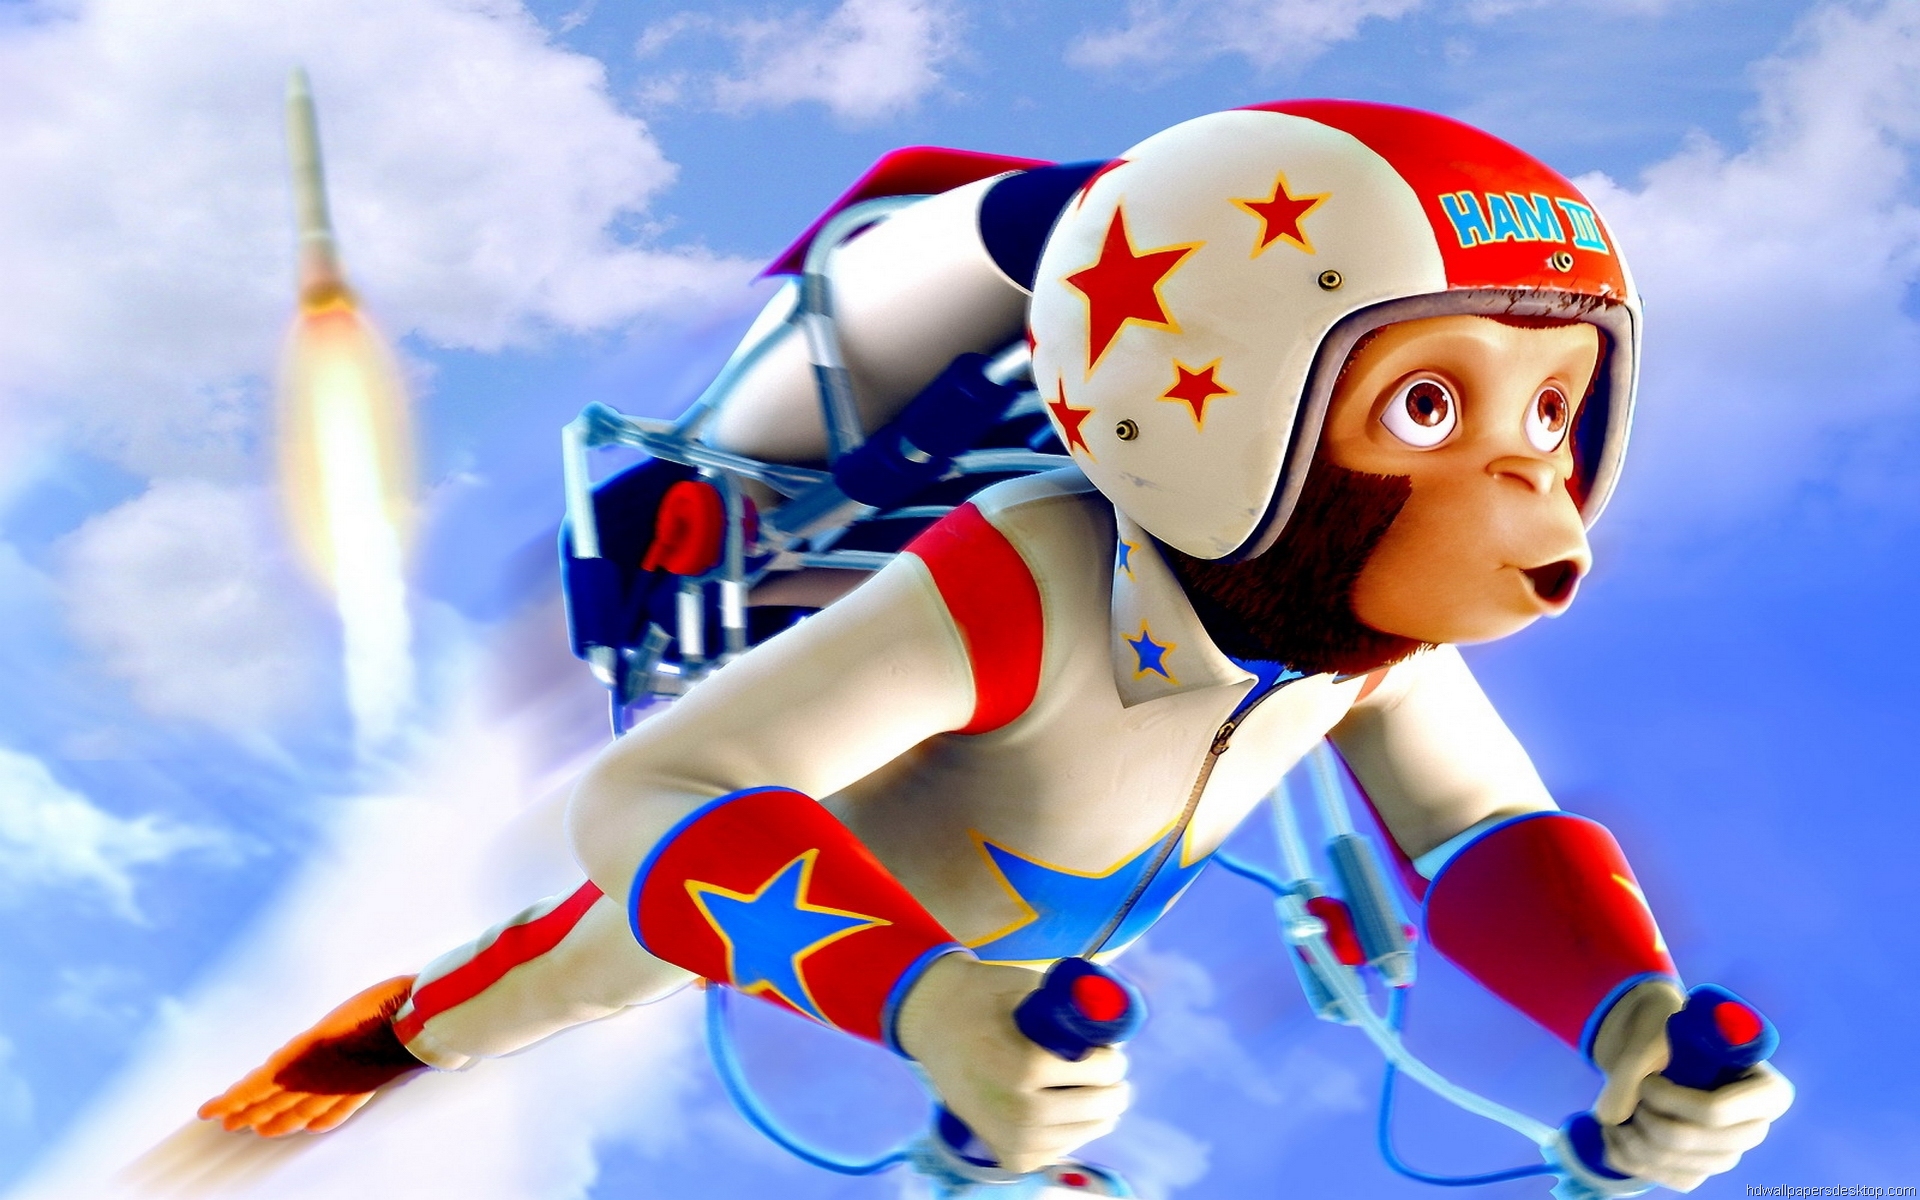 personaje de dibujos animados de papel tapiz,figura de acción,patinaje de velocidad,personaje de ficción,animación,juegos